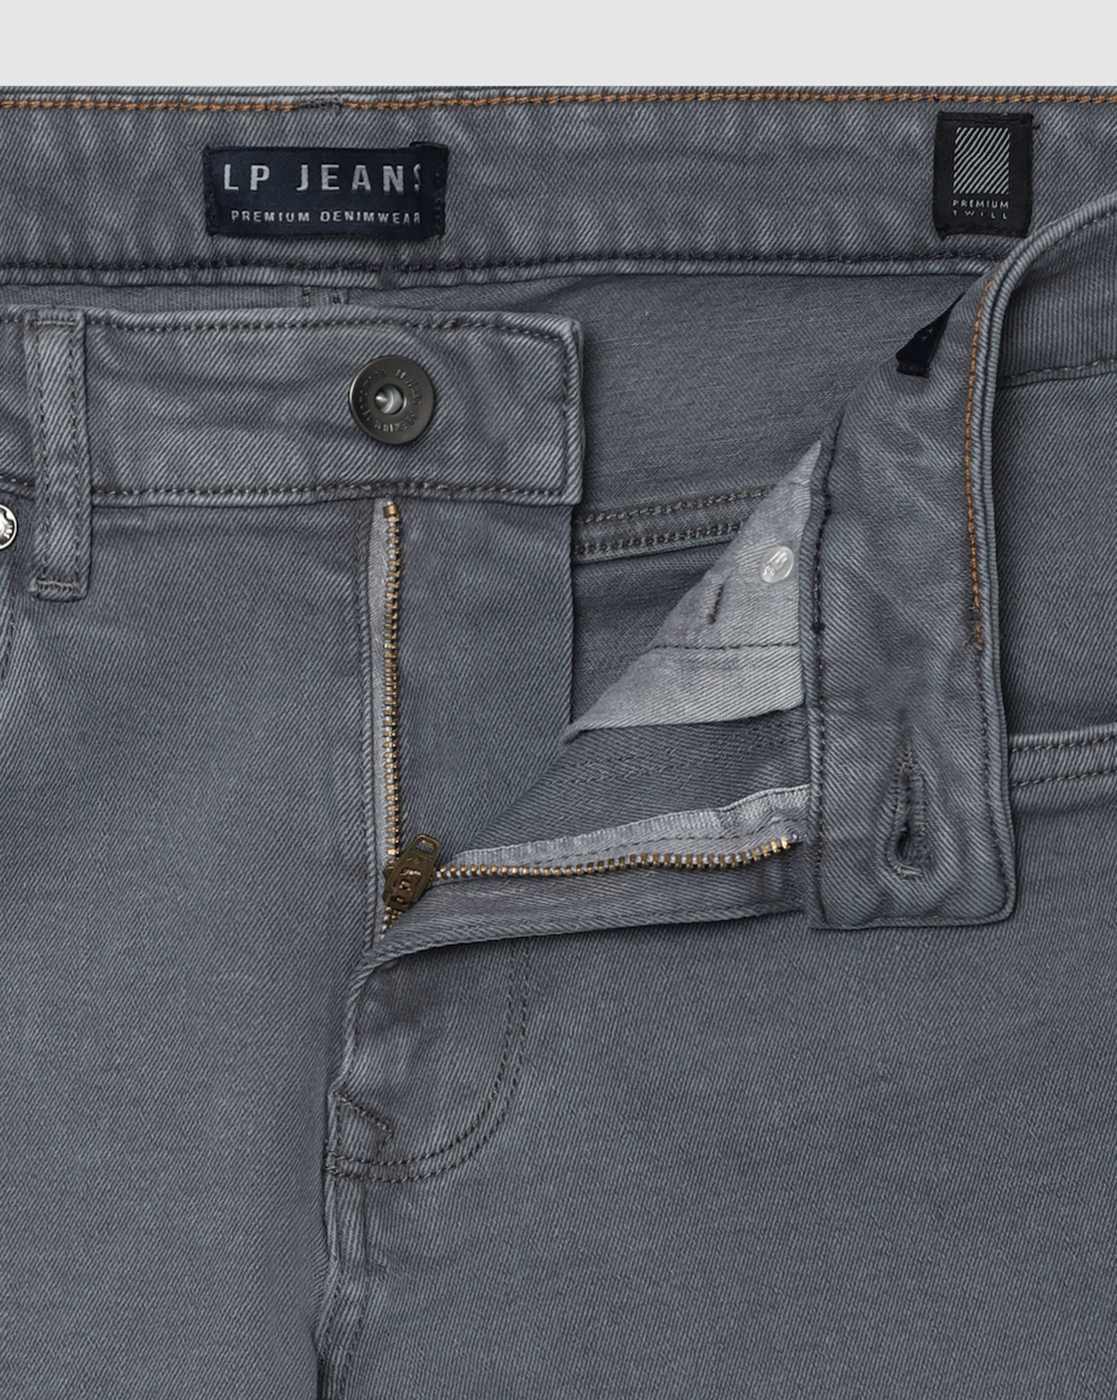 LOUIS PHILIPPE JEANS LP Jeans Mens 34 Black Denim Washed